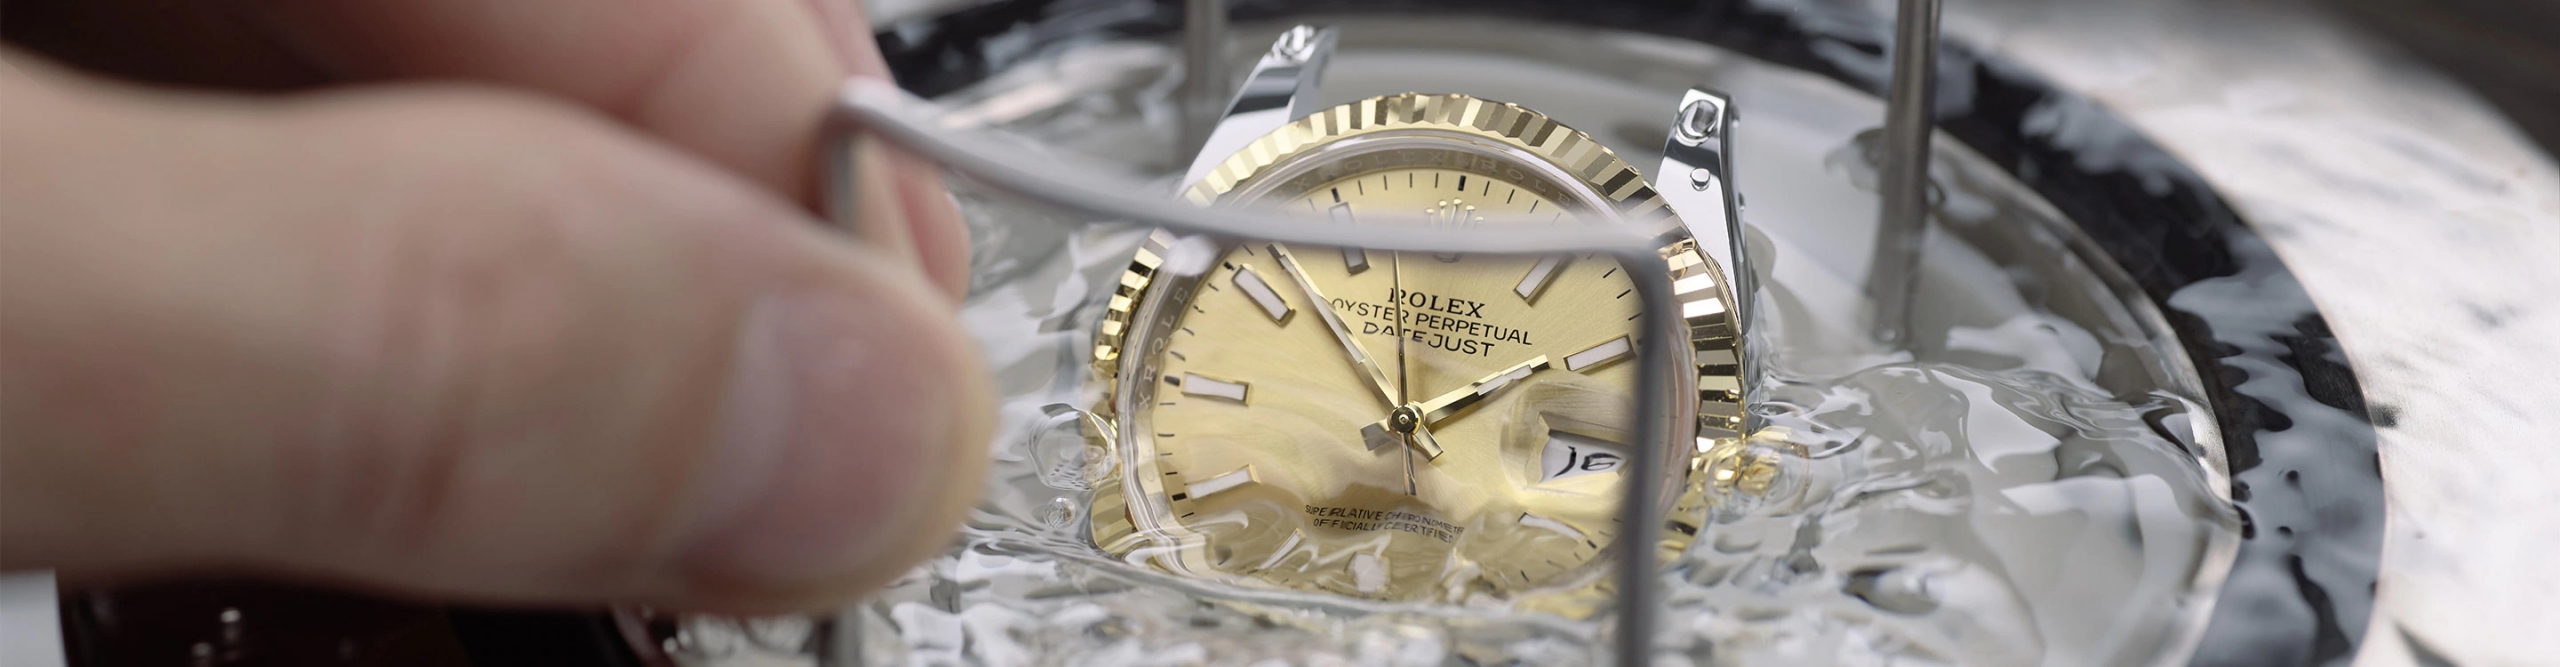 雅典手表表带划痕修复方法